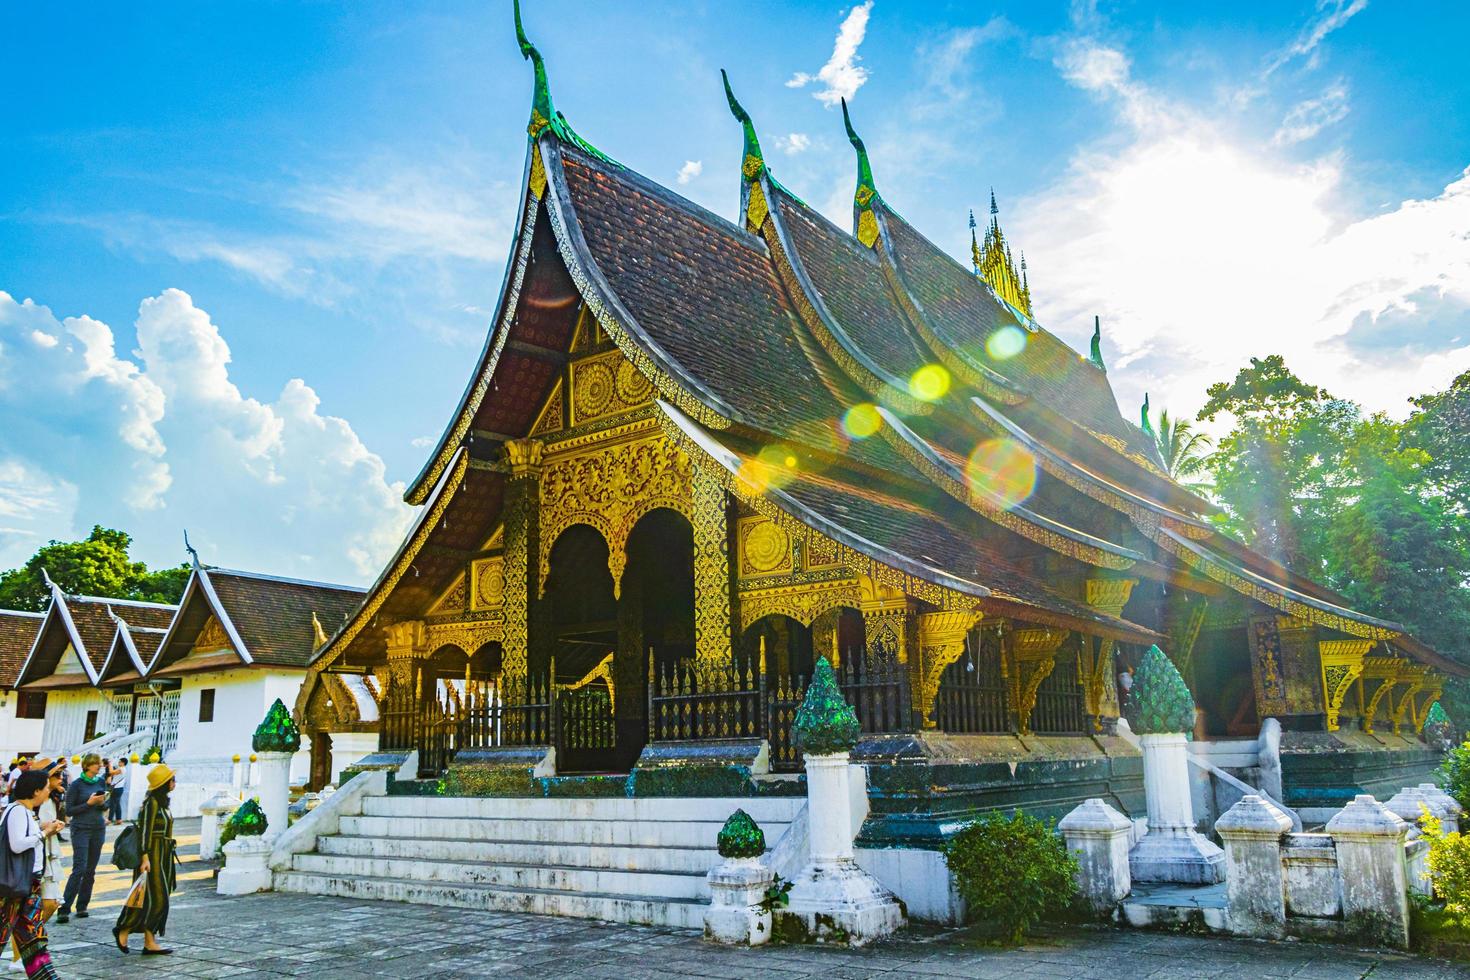 luang prabang, laos 2018- wat xieng thong temple of golden city luang prabang laos foto